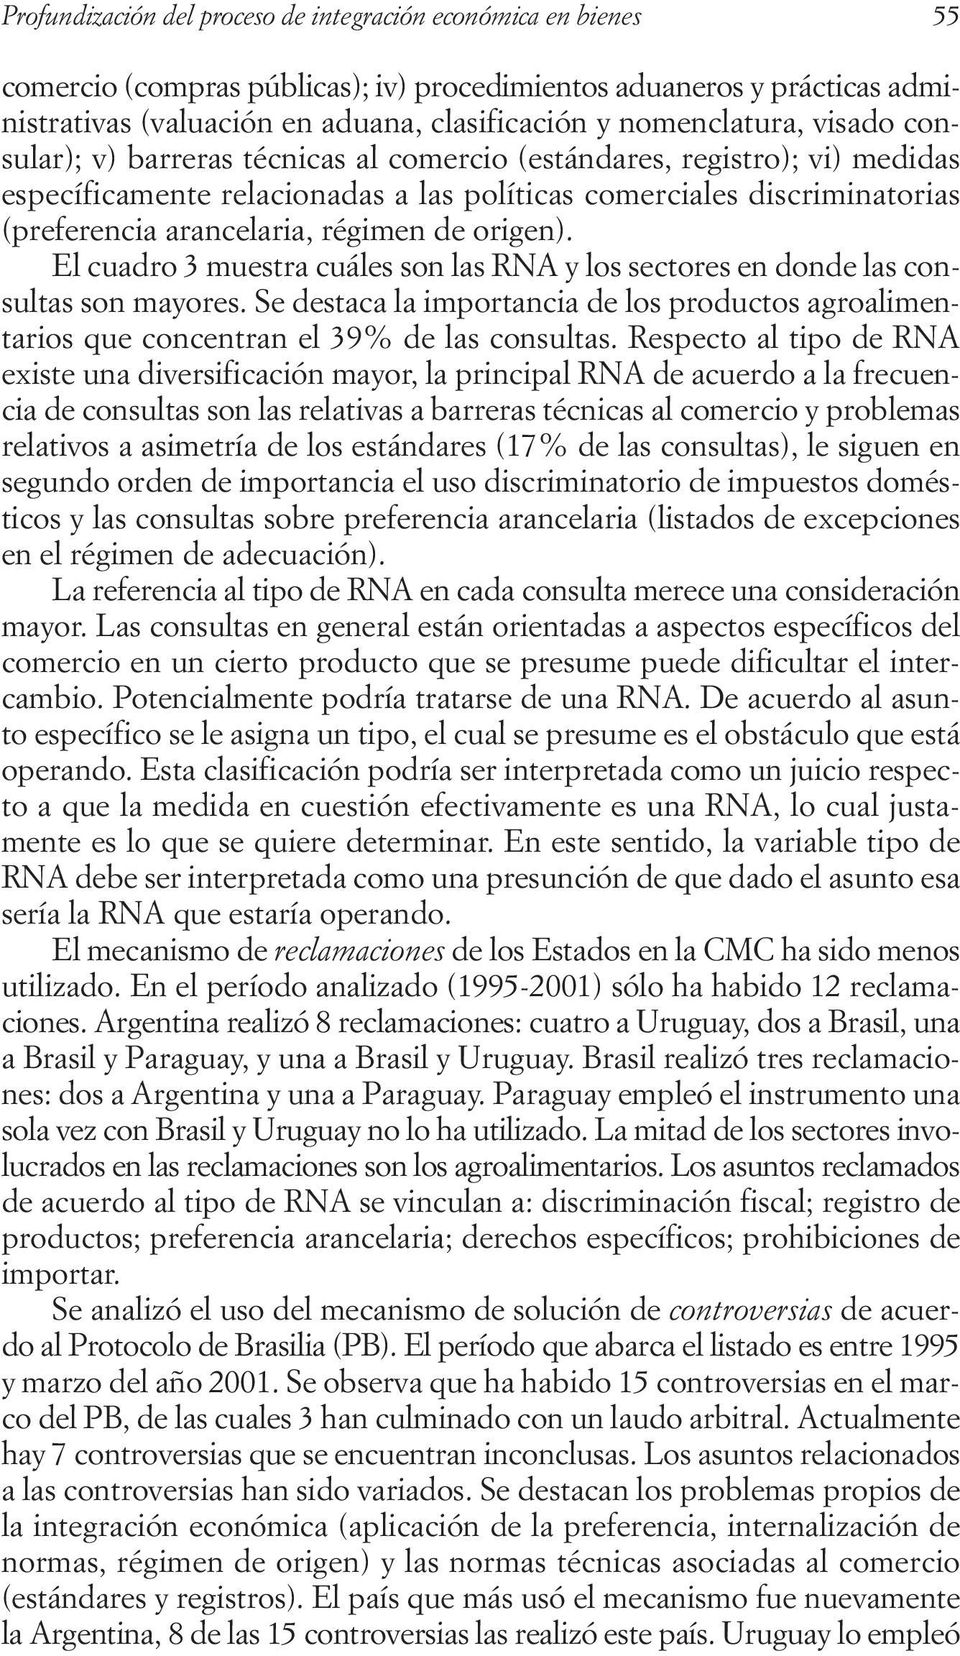 arancelaria, régimen de origen). El cuadro 3 muestra cuáles son las RNA y los sectores en donde las consultas son mayores.